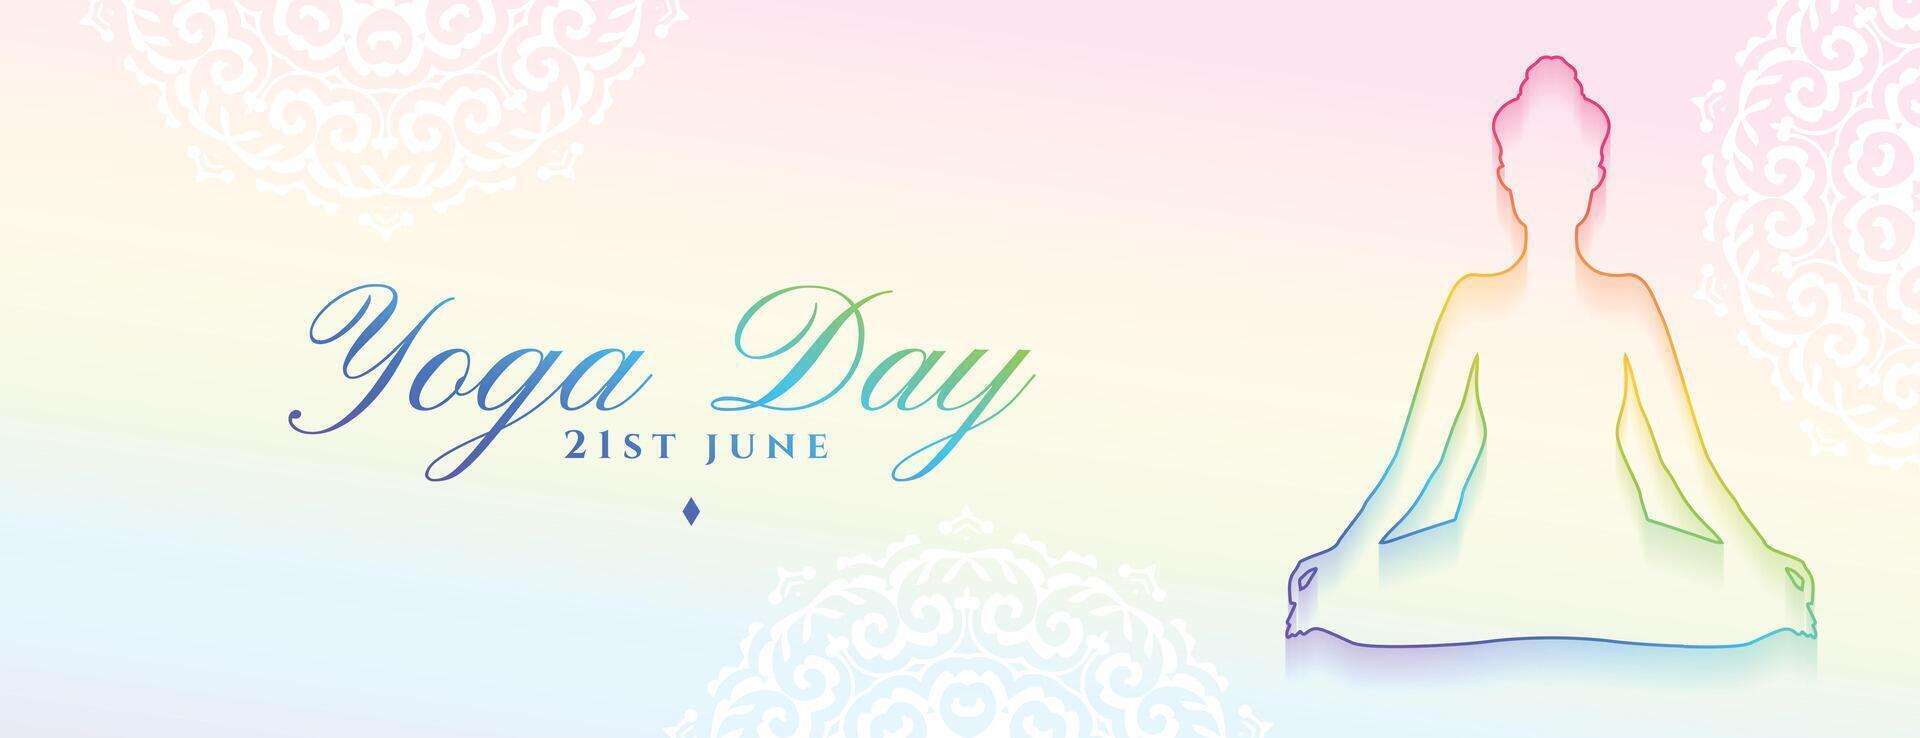 linea stile 21 giugno yoga giorno celebrazione bandiera per salutare stile di vita vettore